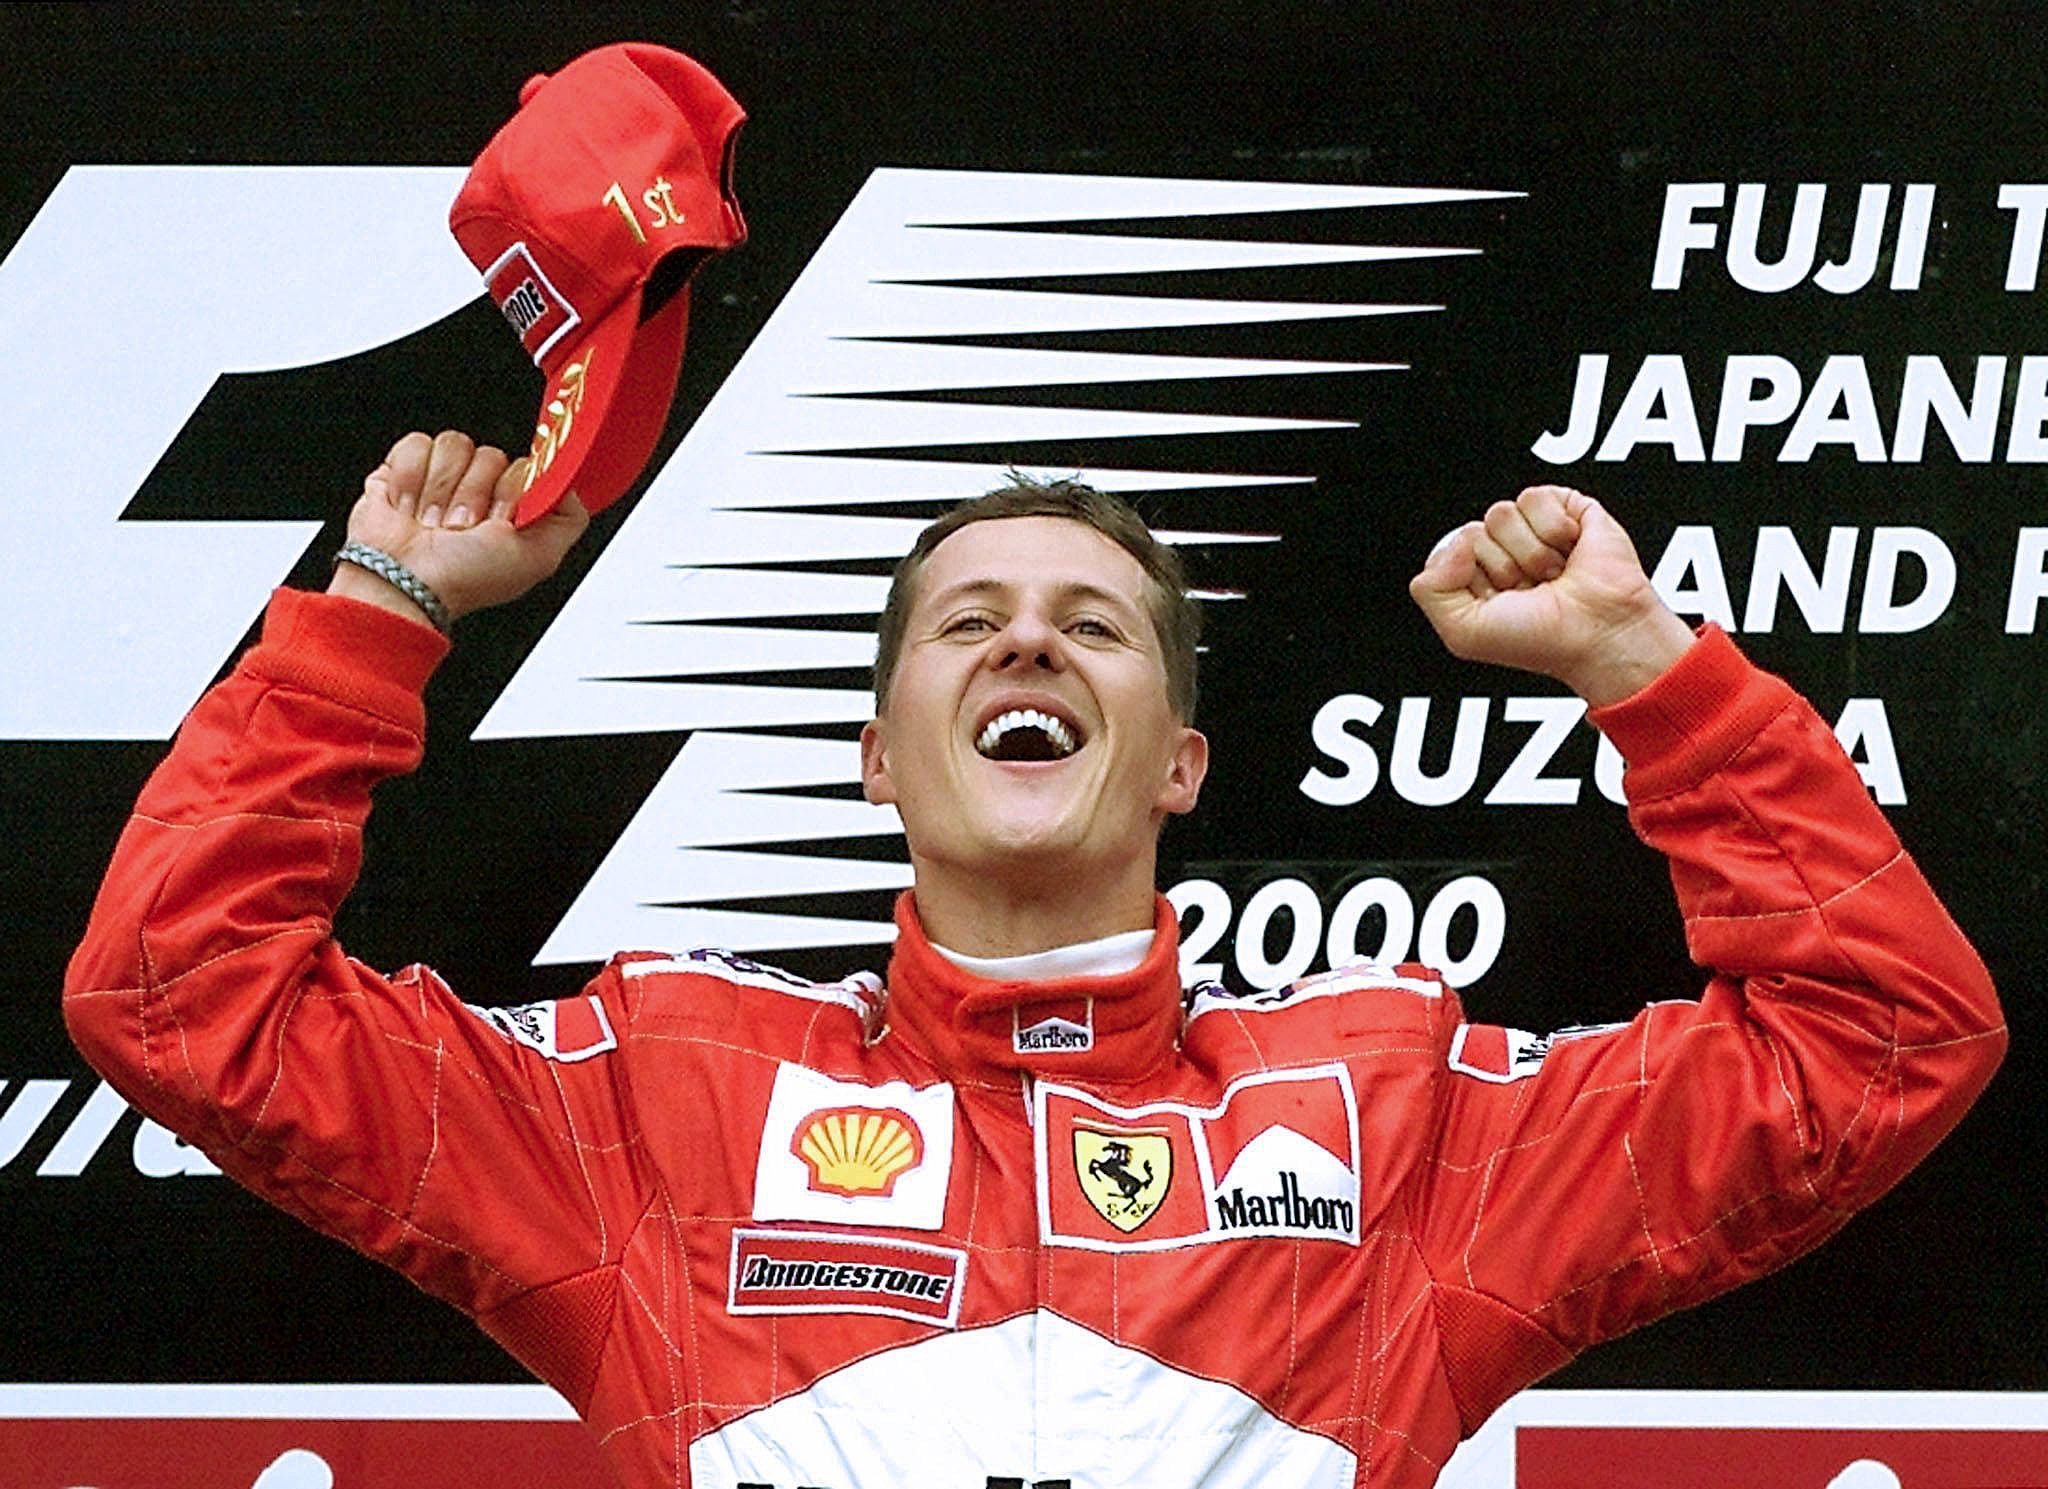 Detalii tulburătoare despre Michael Schumacher: Ne uităm la televizor împreună